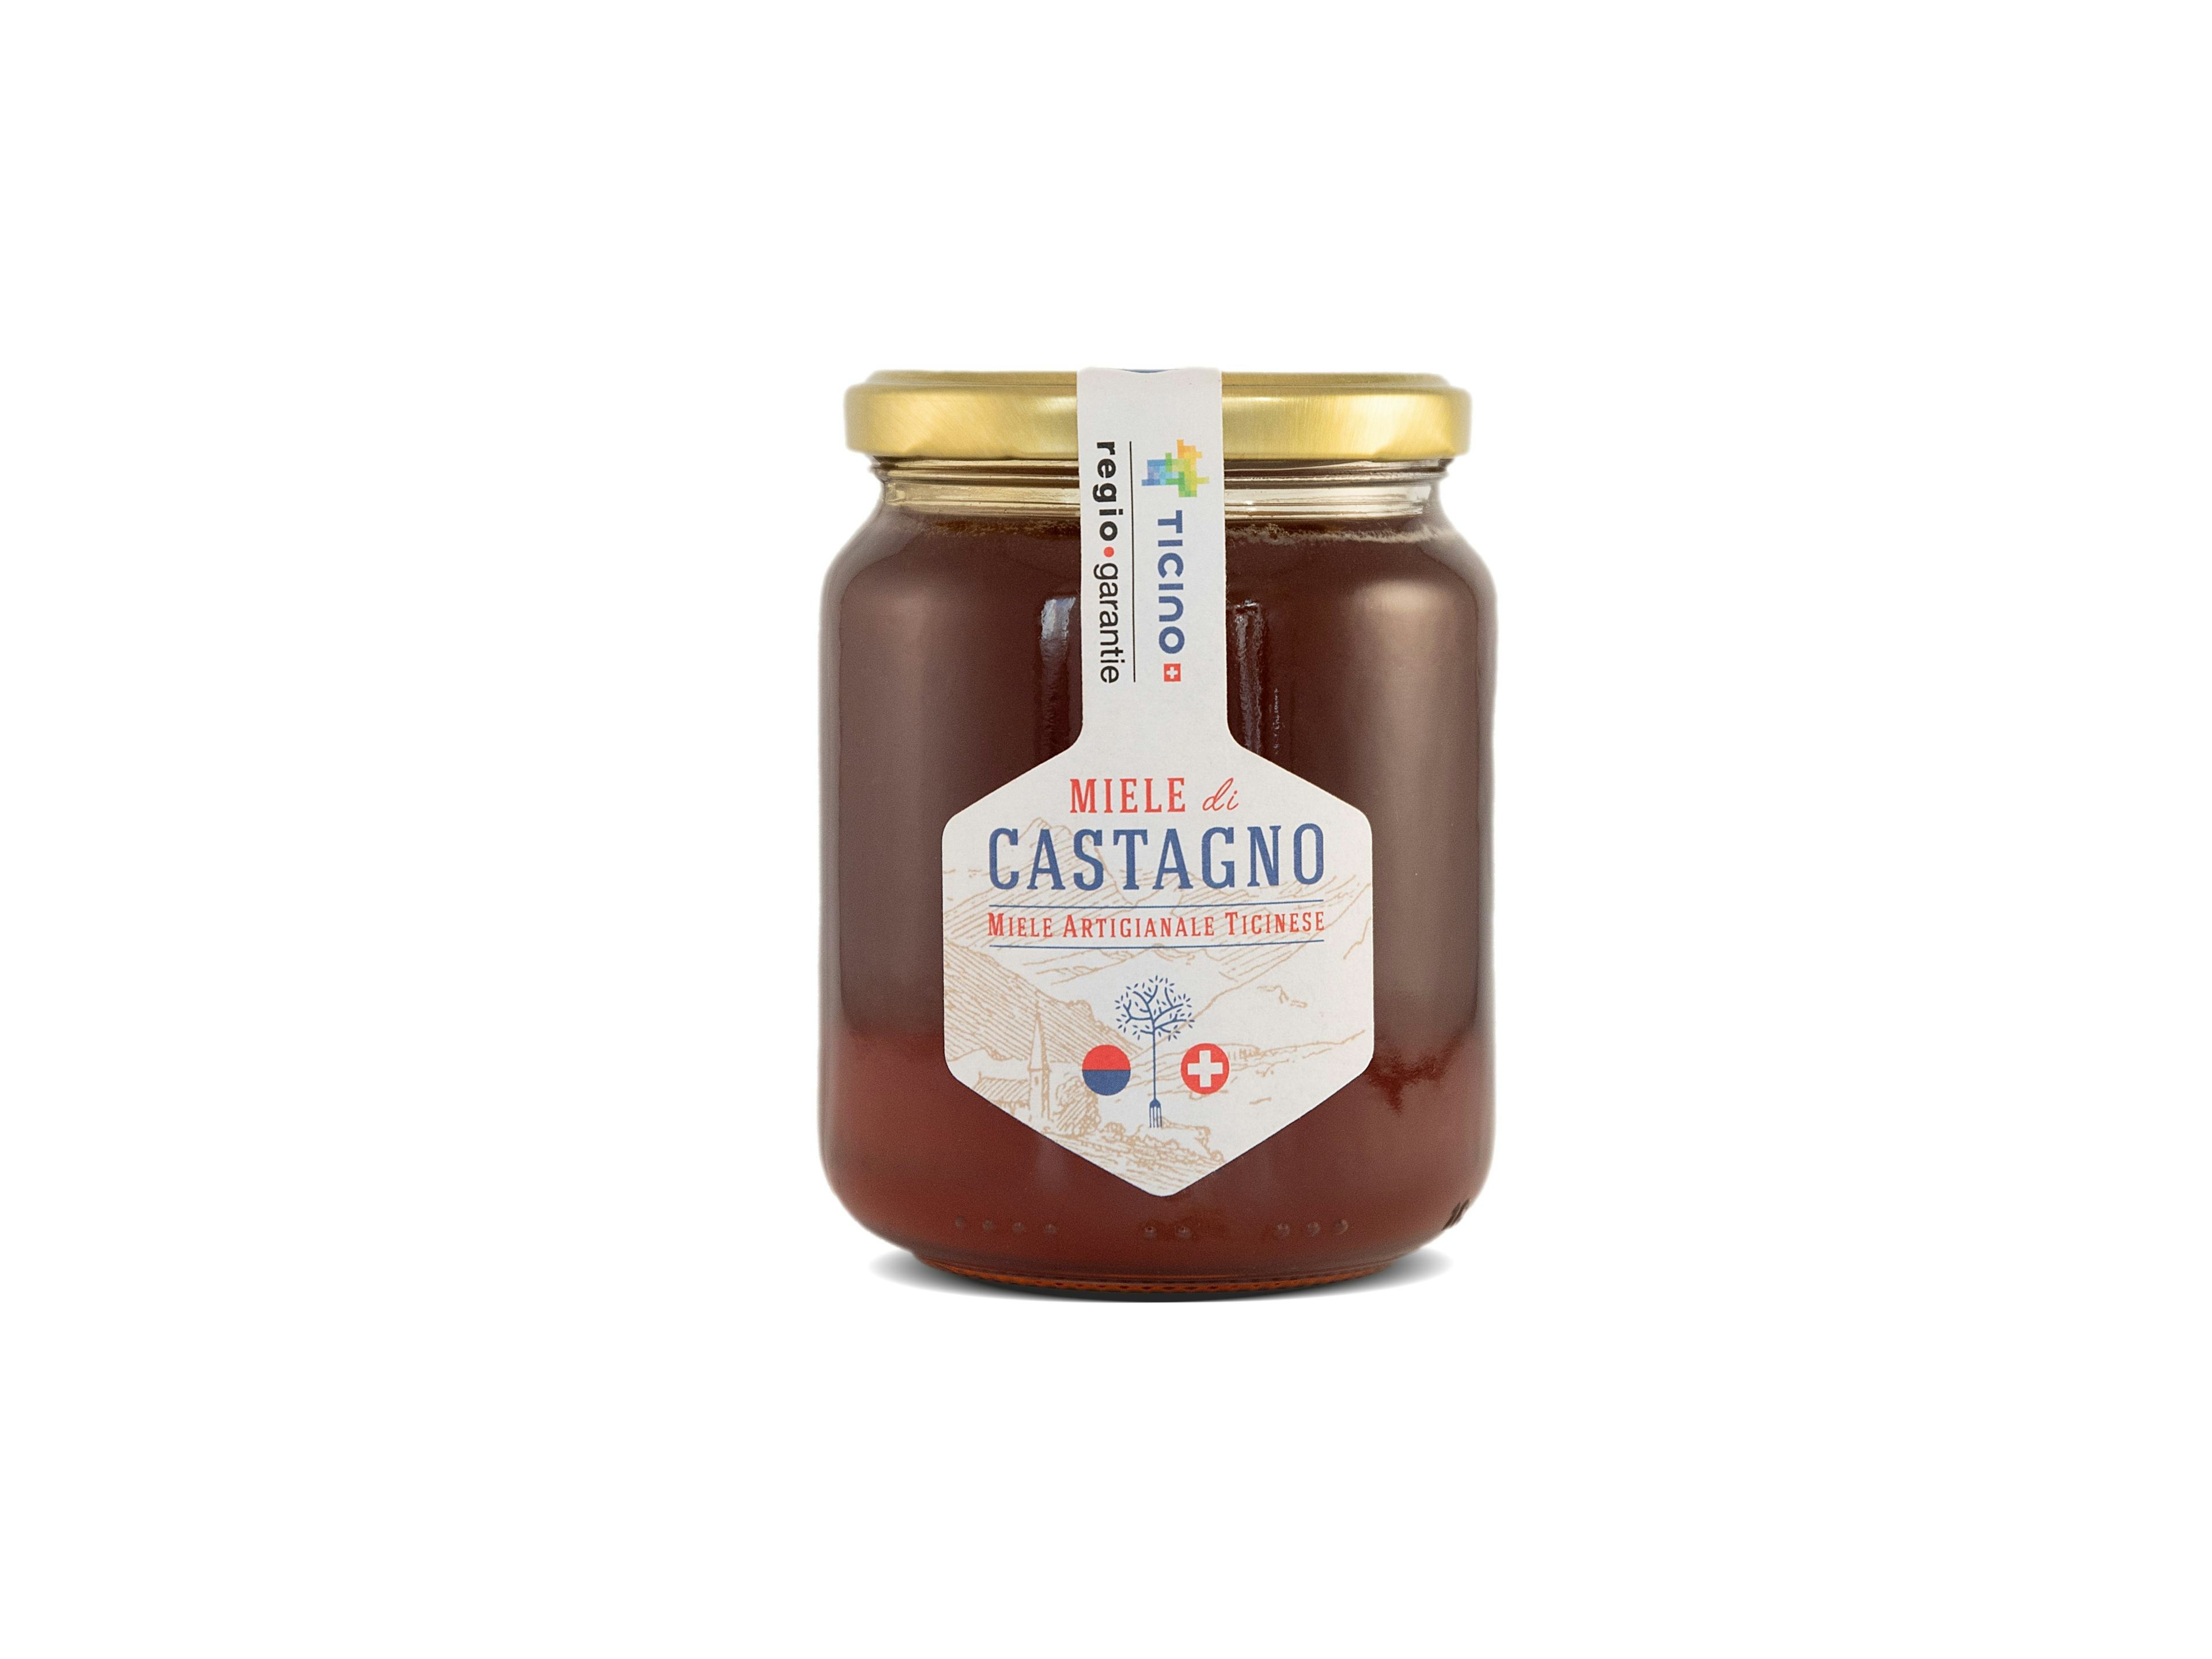 Miele di Castagno da 500g, artisanal product for direct sale in Switzerland